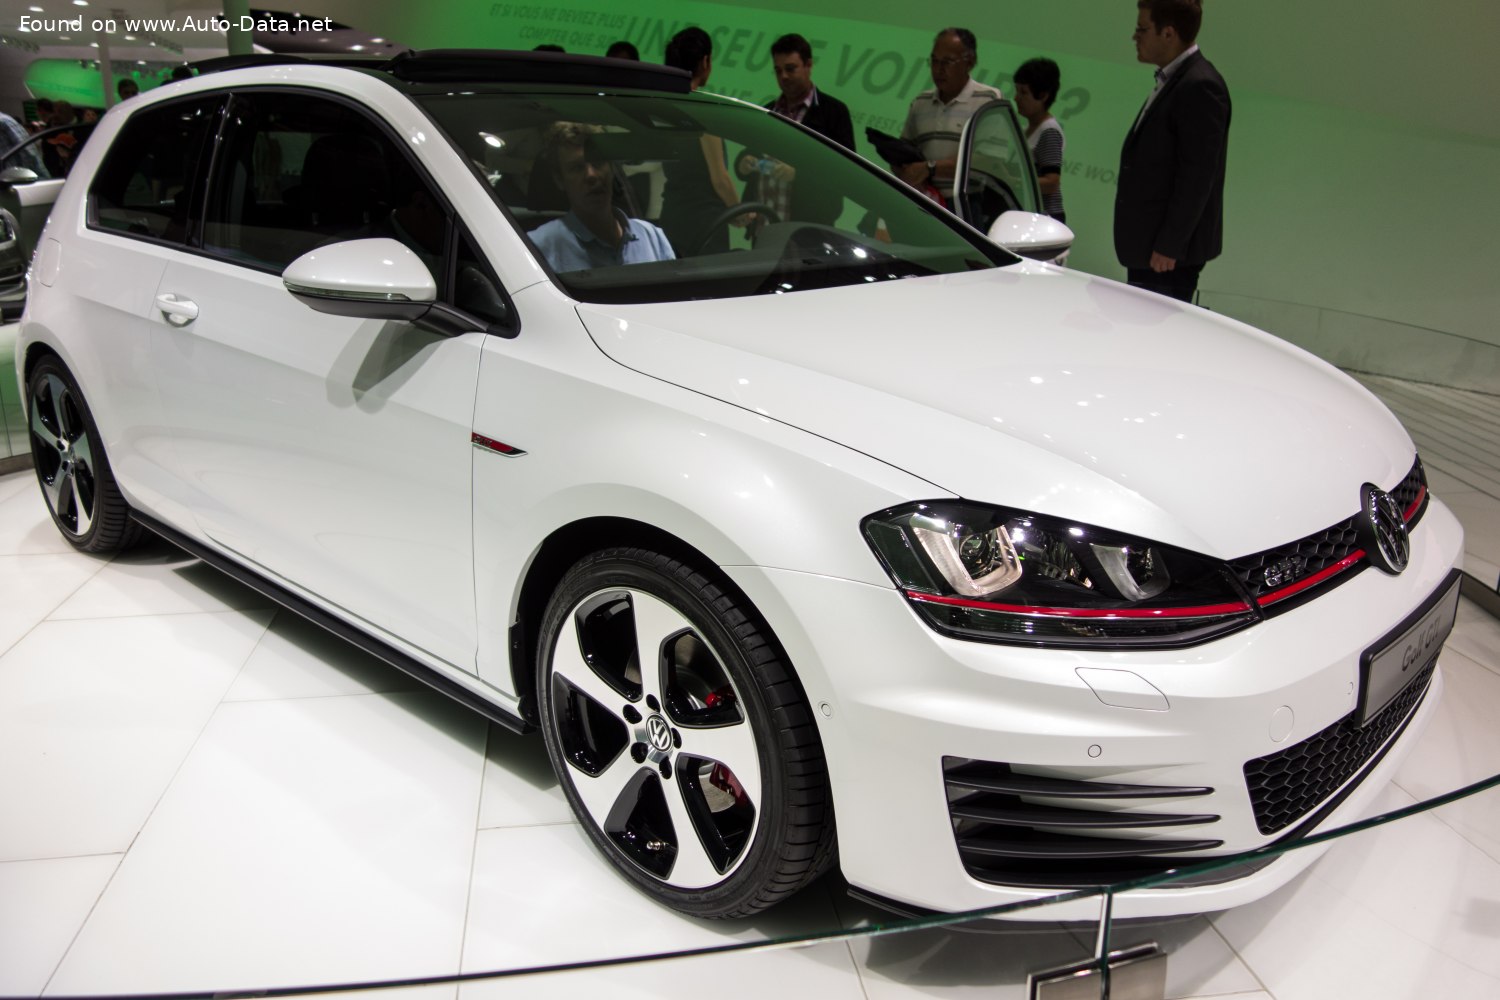 2013 Volkswagen Golf VII (3-door) GTI Performance 2.0 TSI (230 Hp)